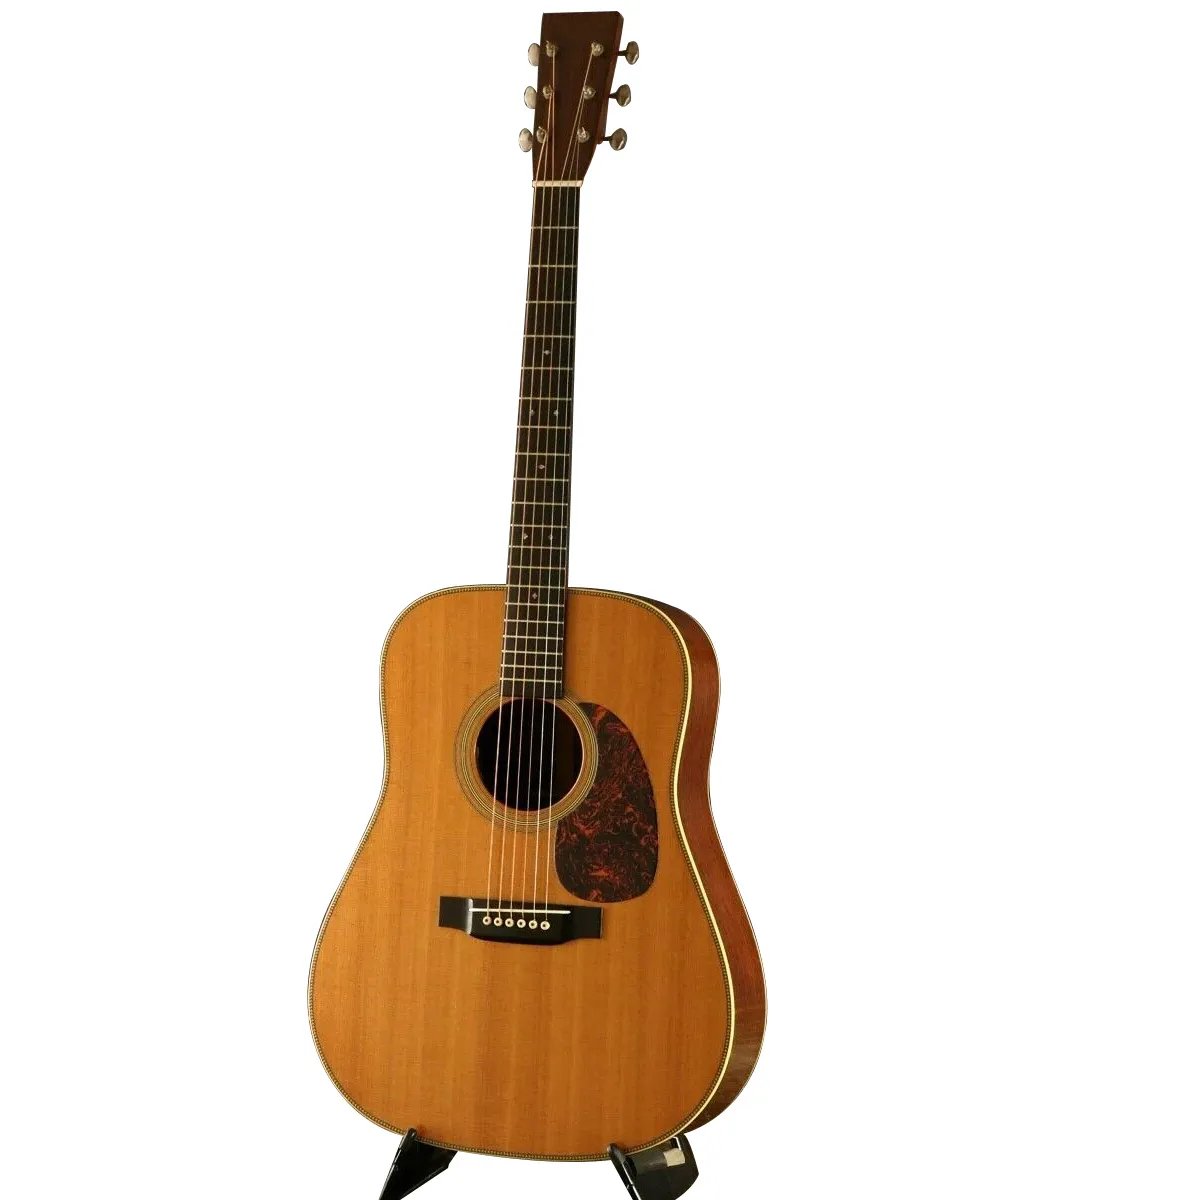 HD-28V 2004 Acoustic Guitar F/S jako sama ze zdjęć